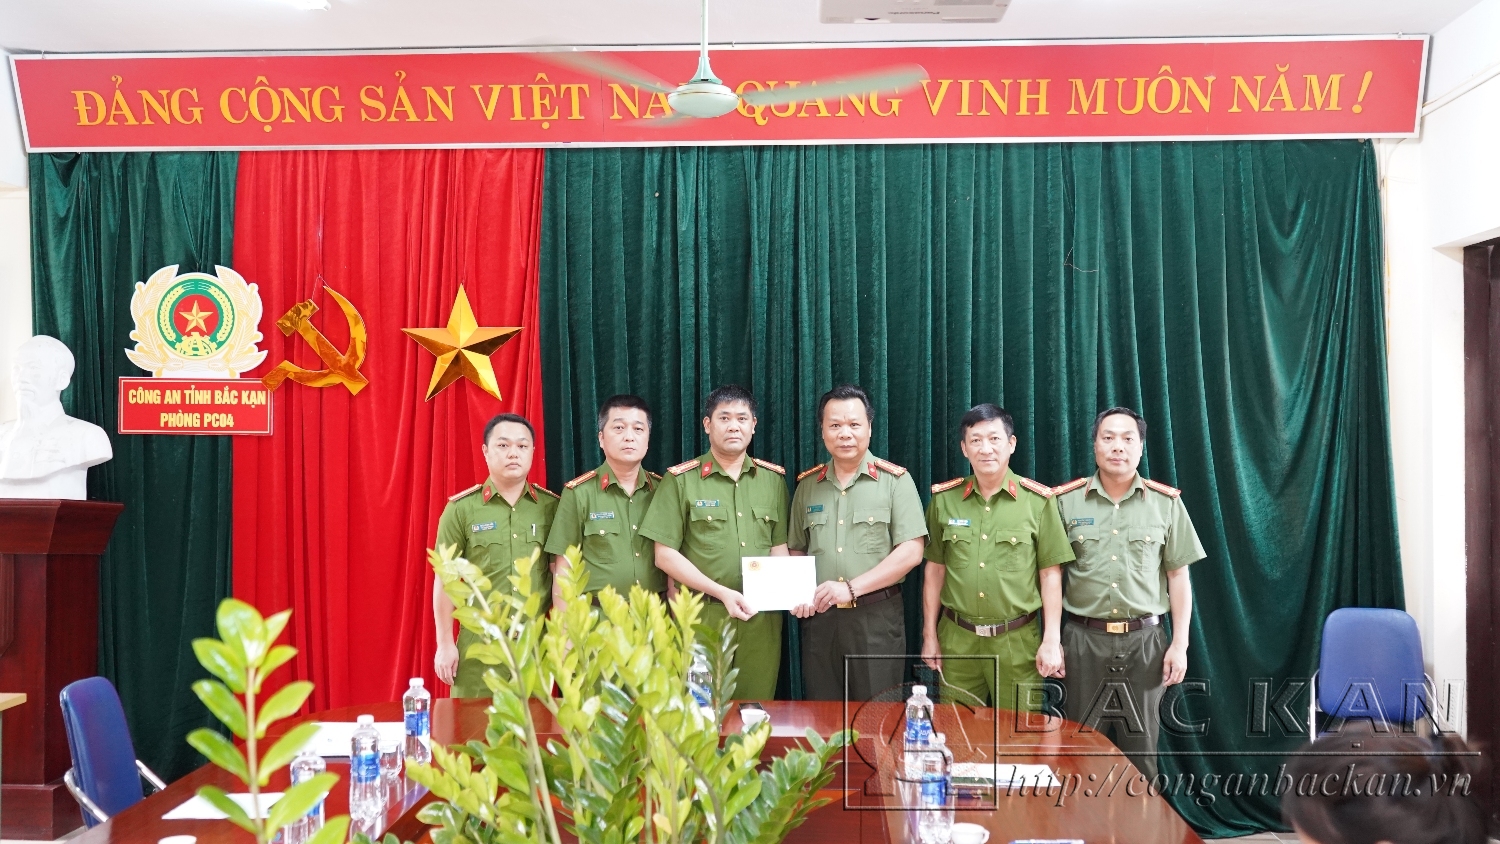 Đại tá Hà Văn Tuyên, Giám đốc Công an tỉnh thưởng nóng Ban chuyên án